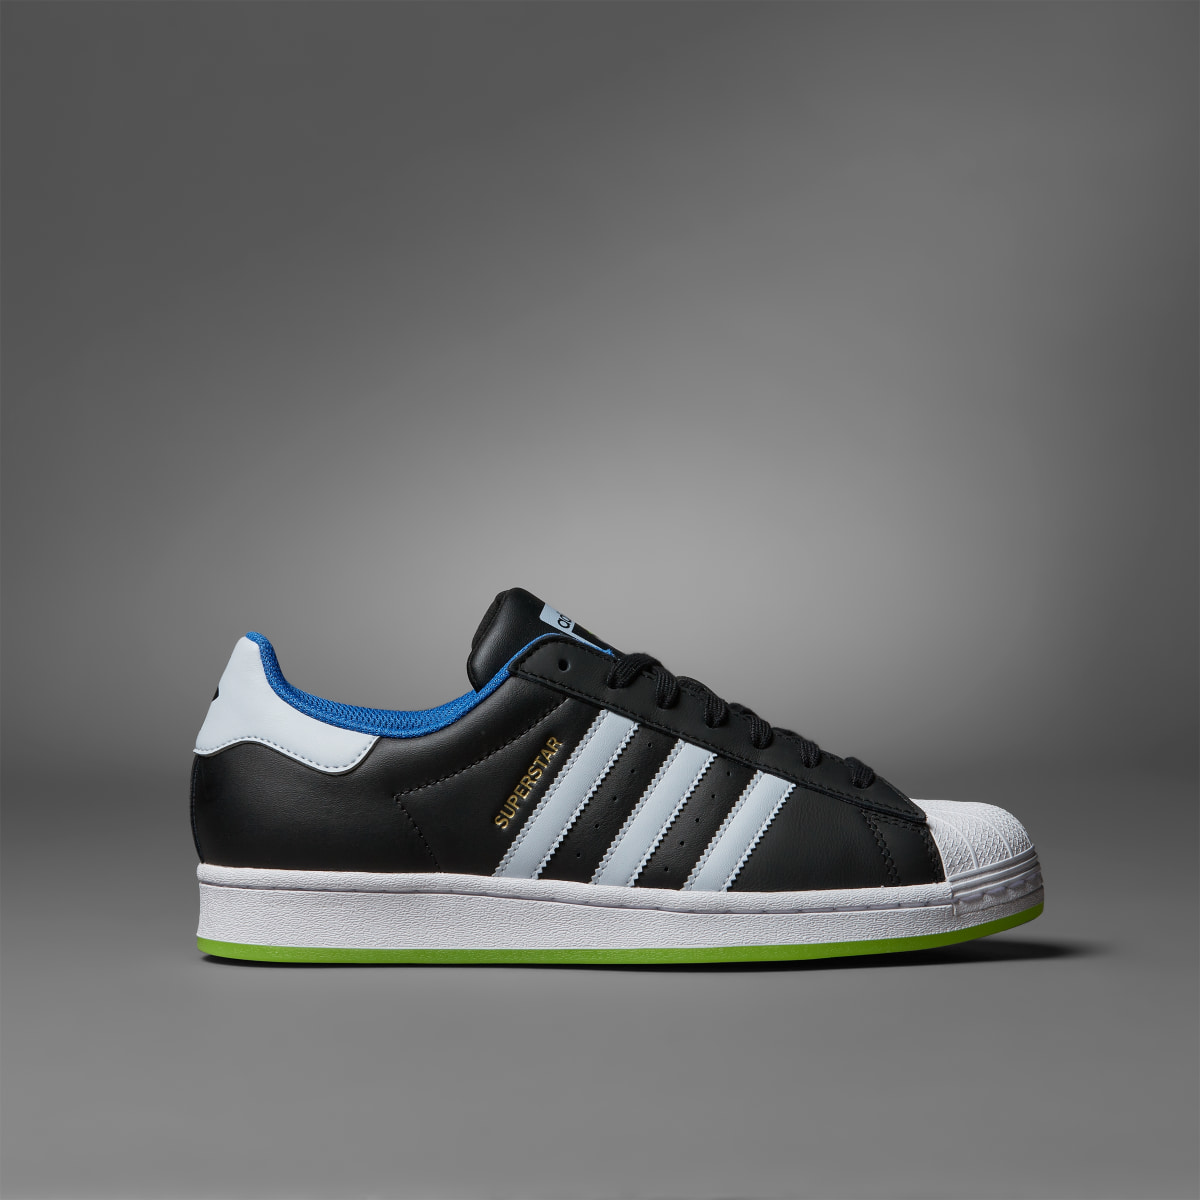 Adidas Superstar x Indigo Herz Shoes. 4